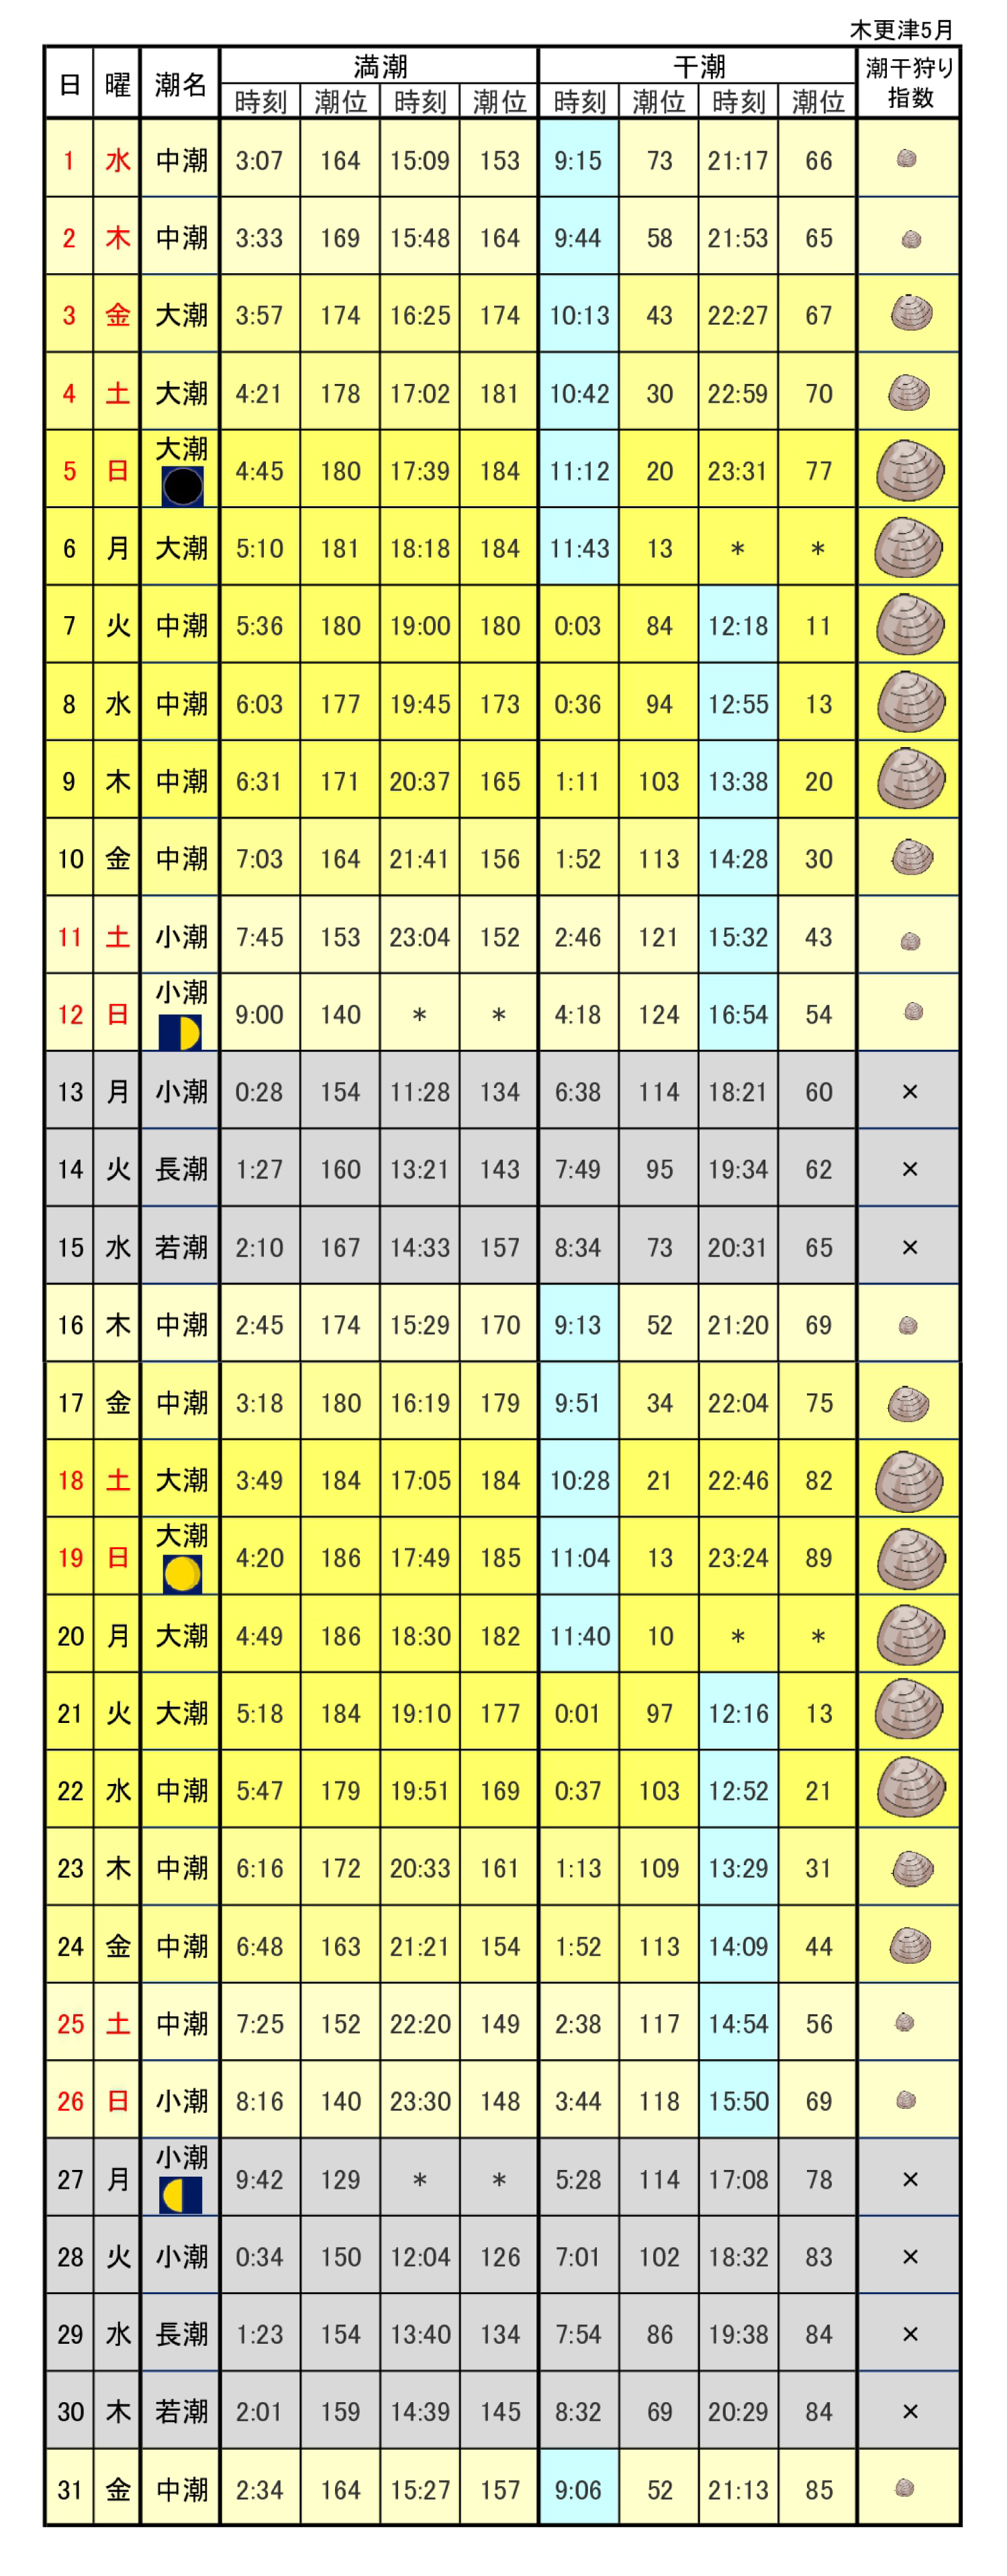 木更津潮干狩りカレンダー2019年5月